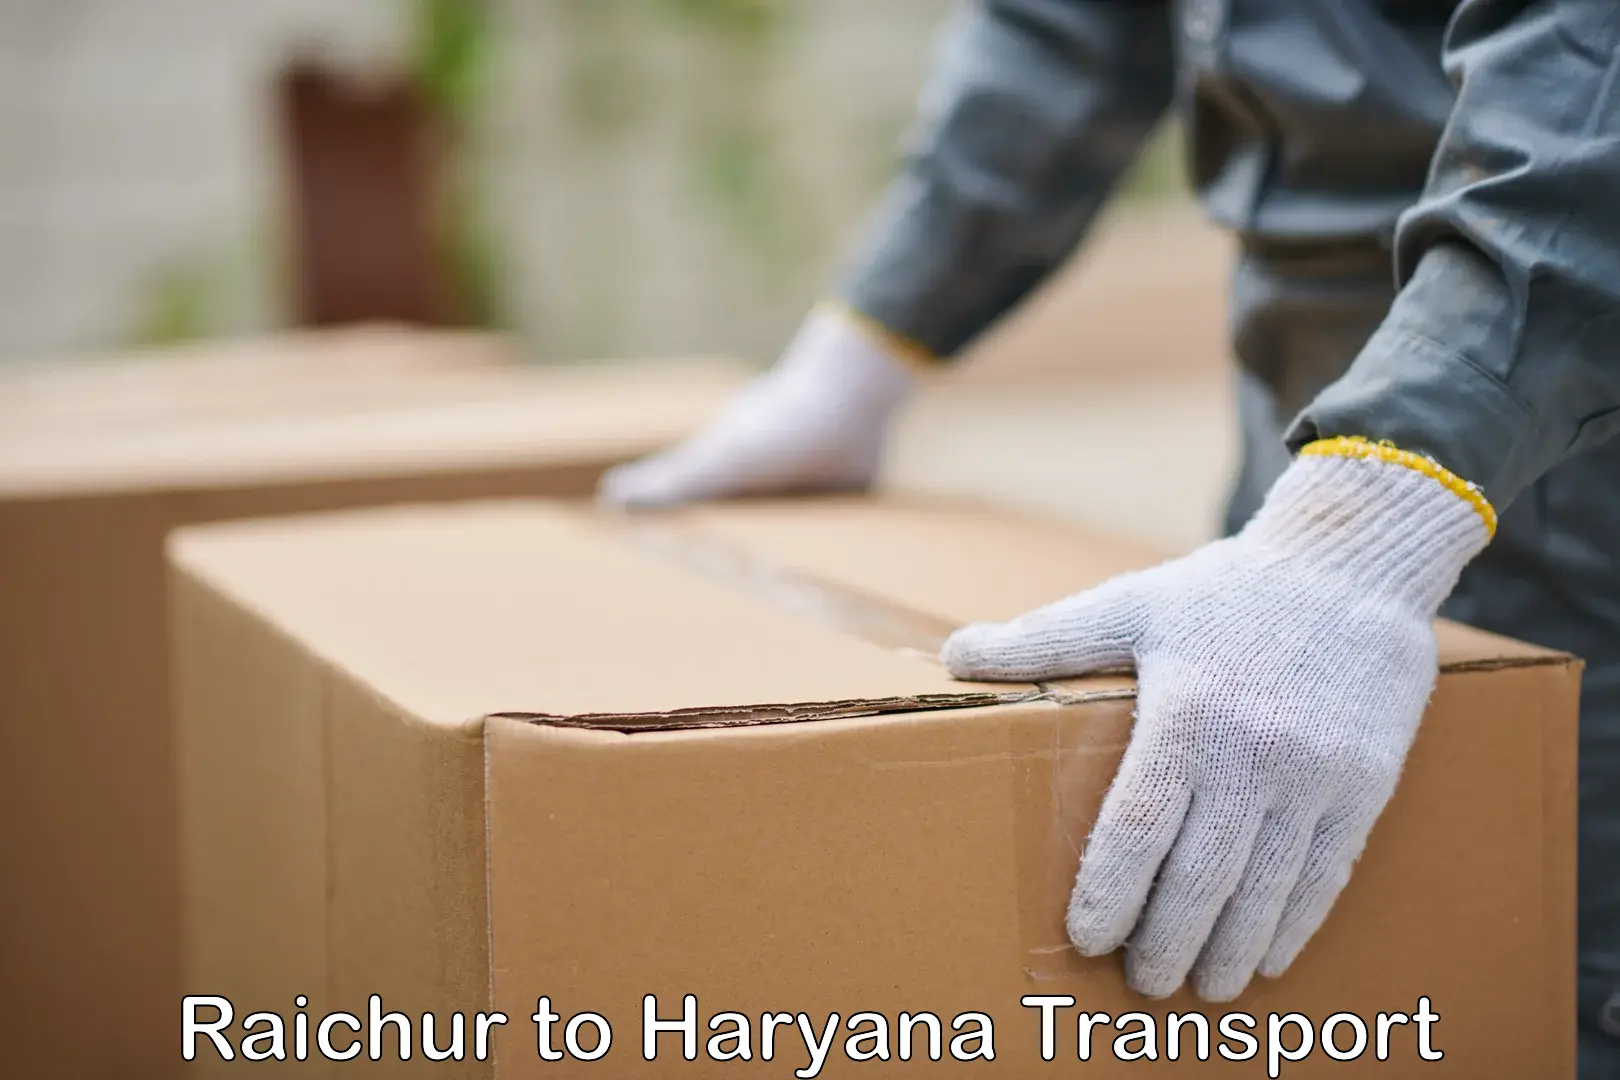 Nearest transport service Raichur to Jhajjar